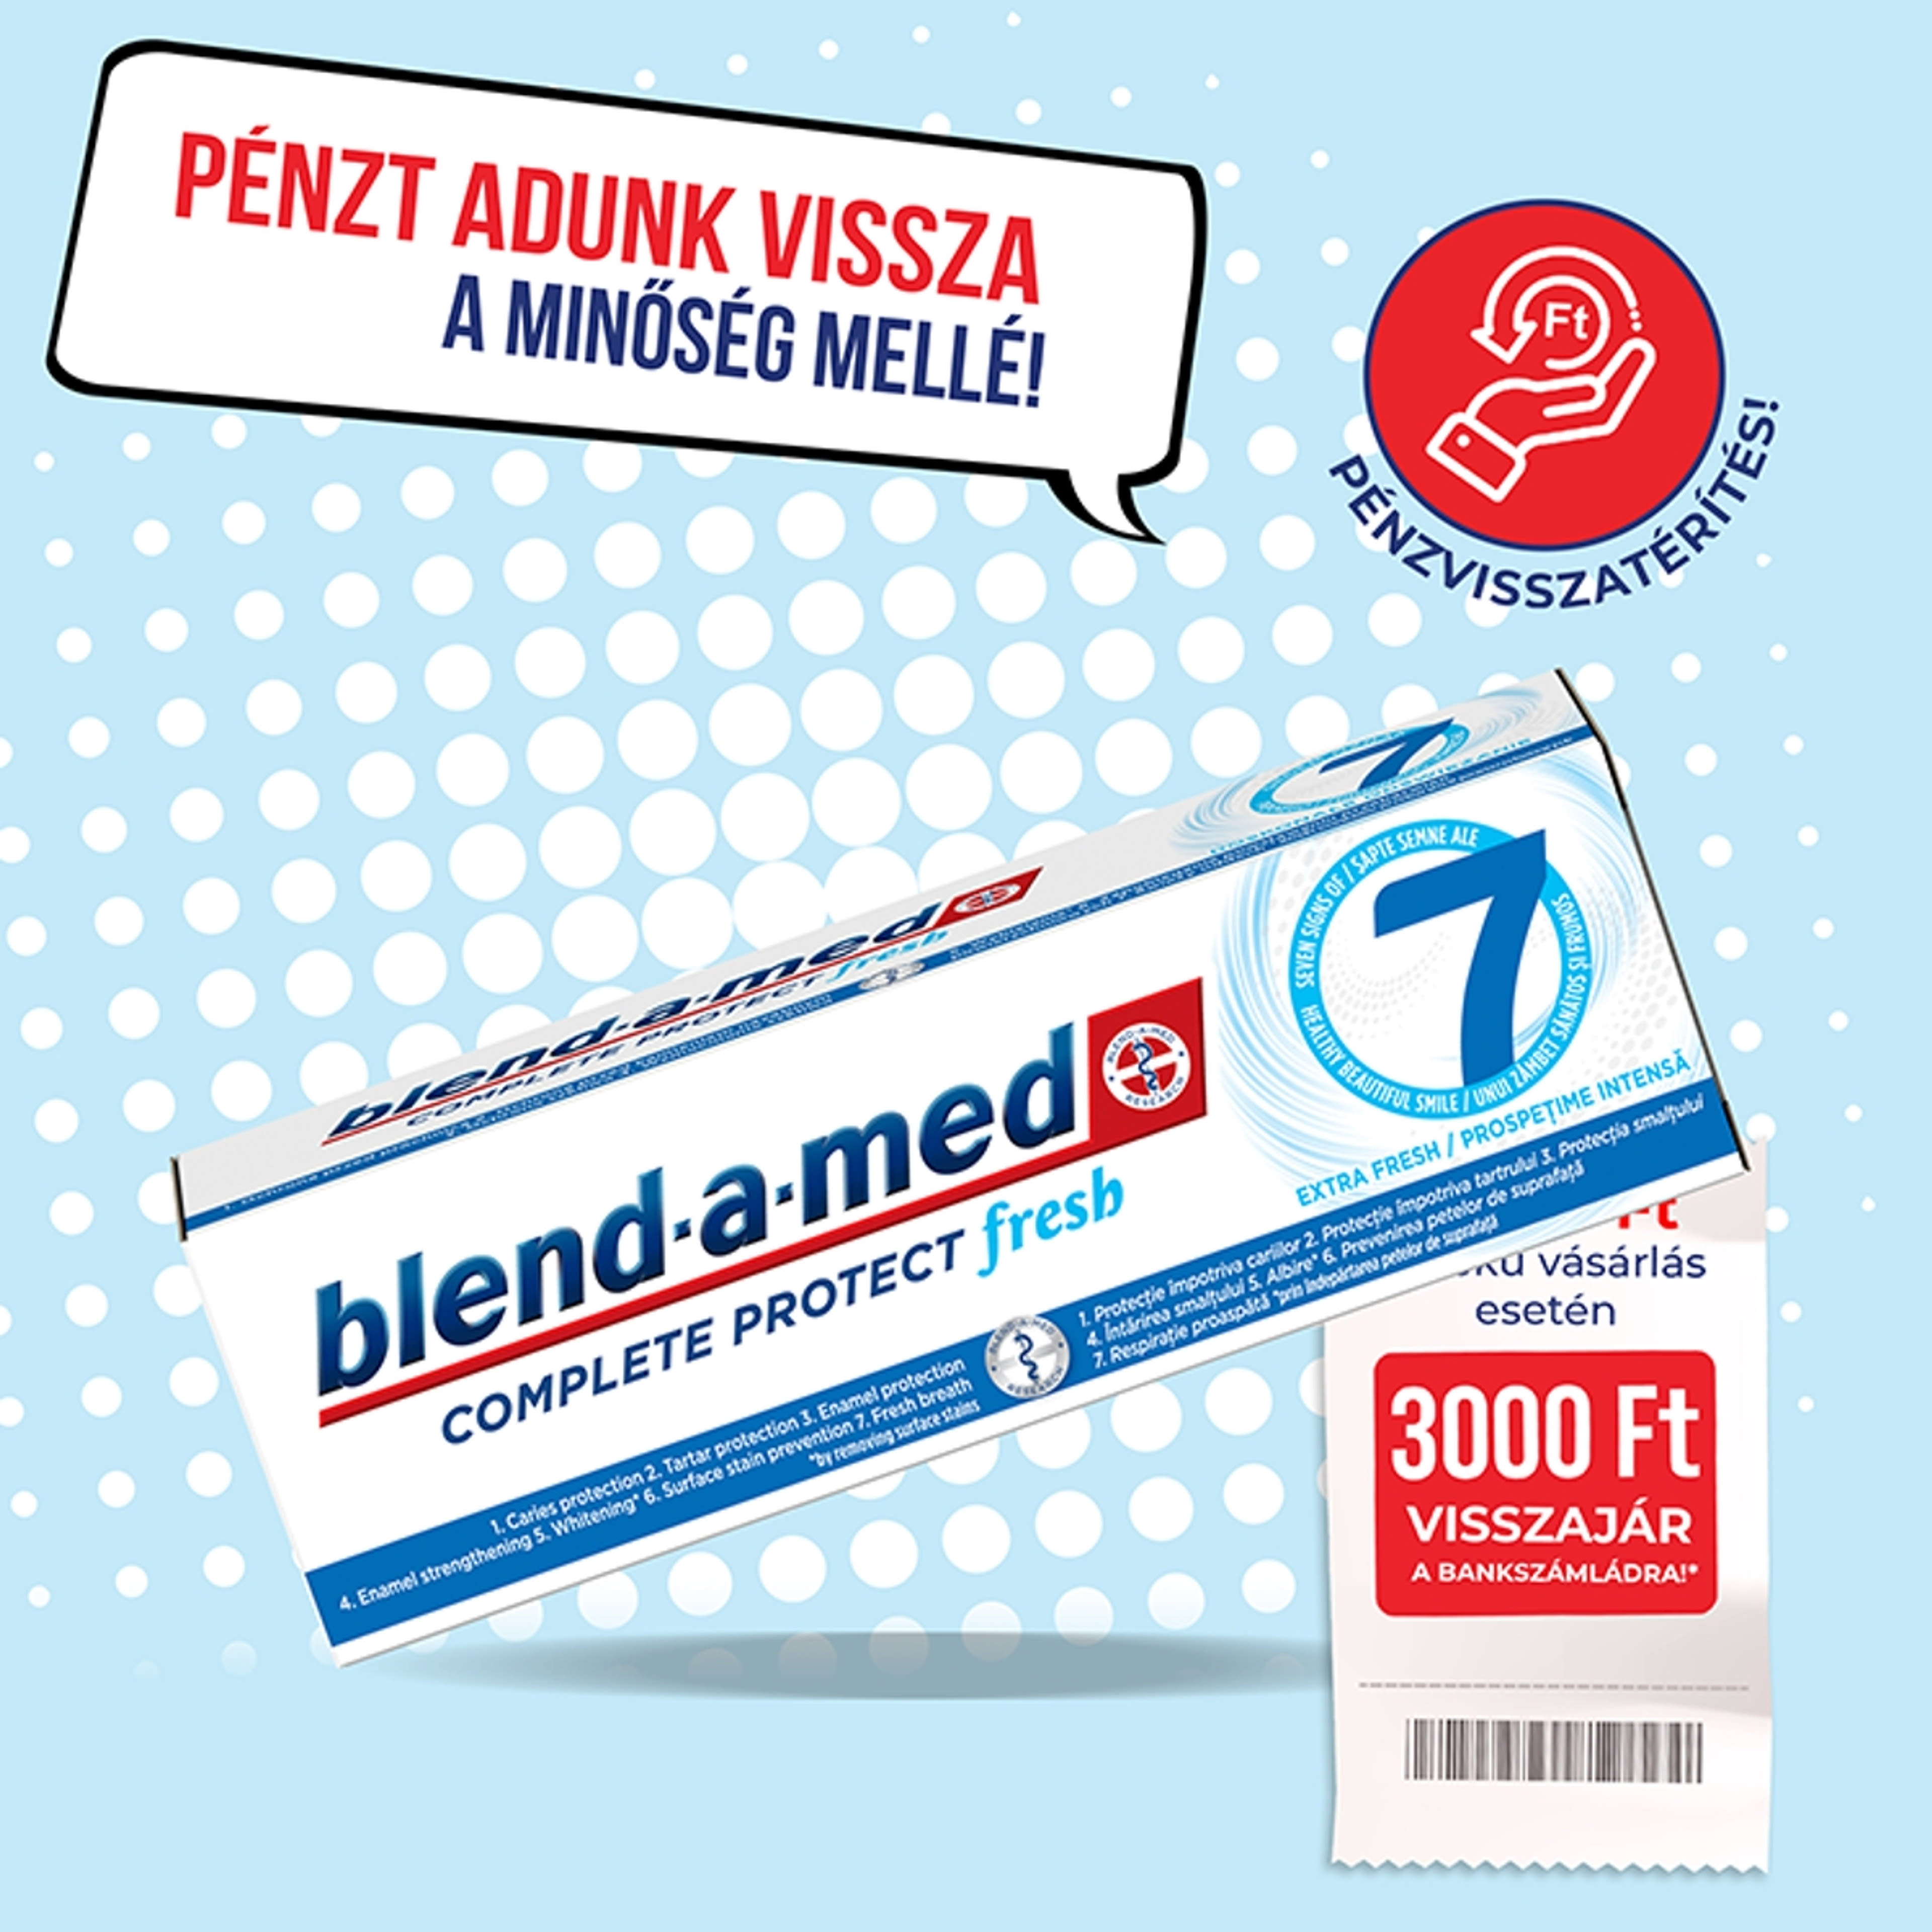 Blend-A-Med Complete Protect 7 extra fresh fogkrém - 75 ml-1